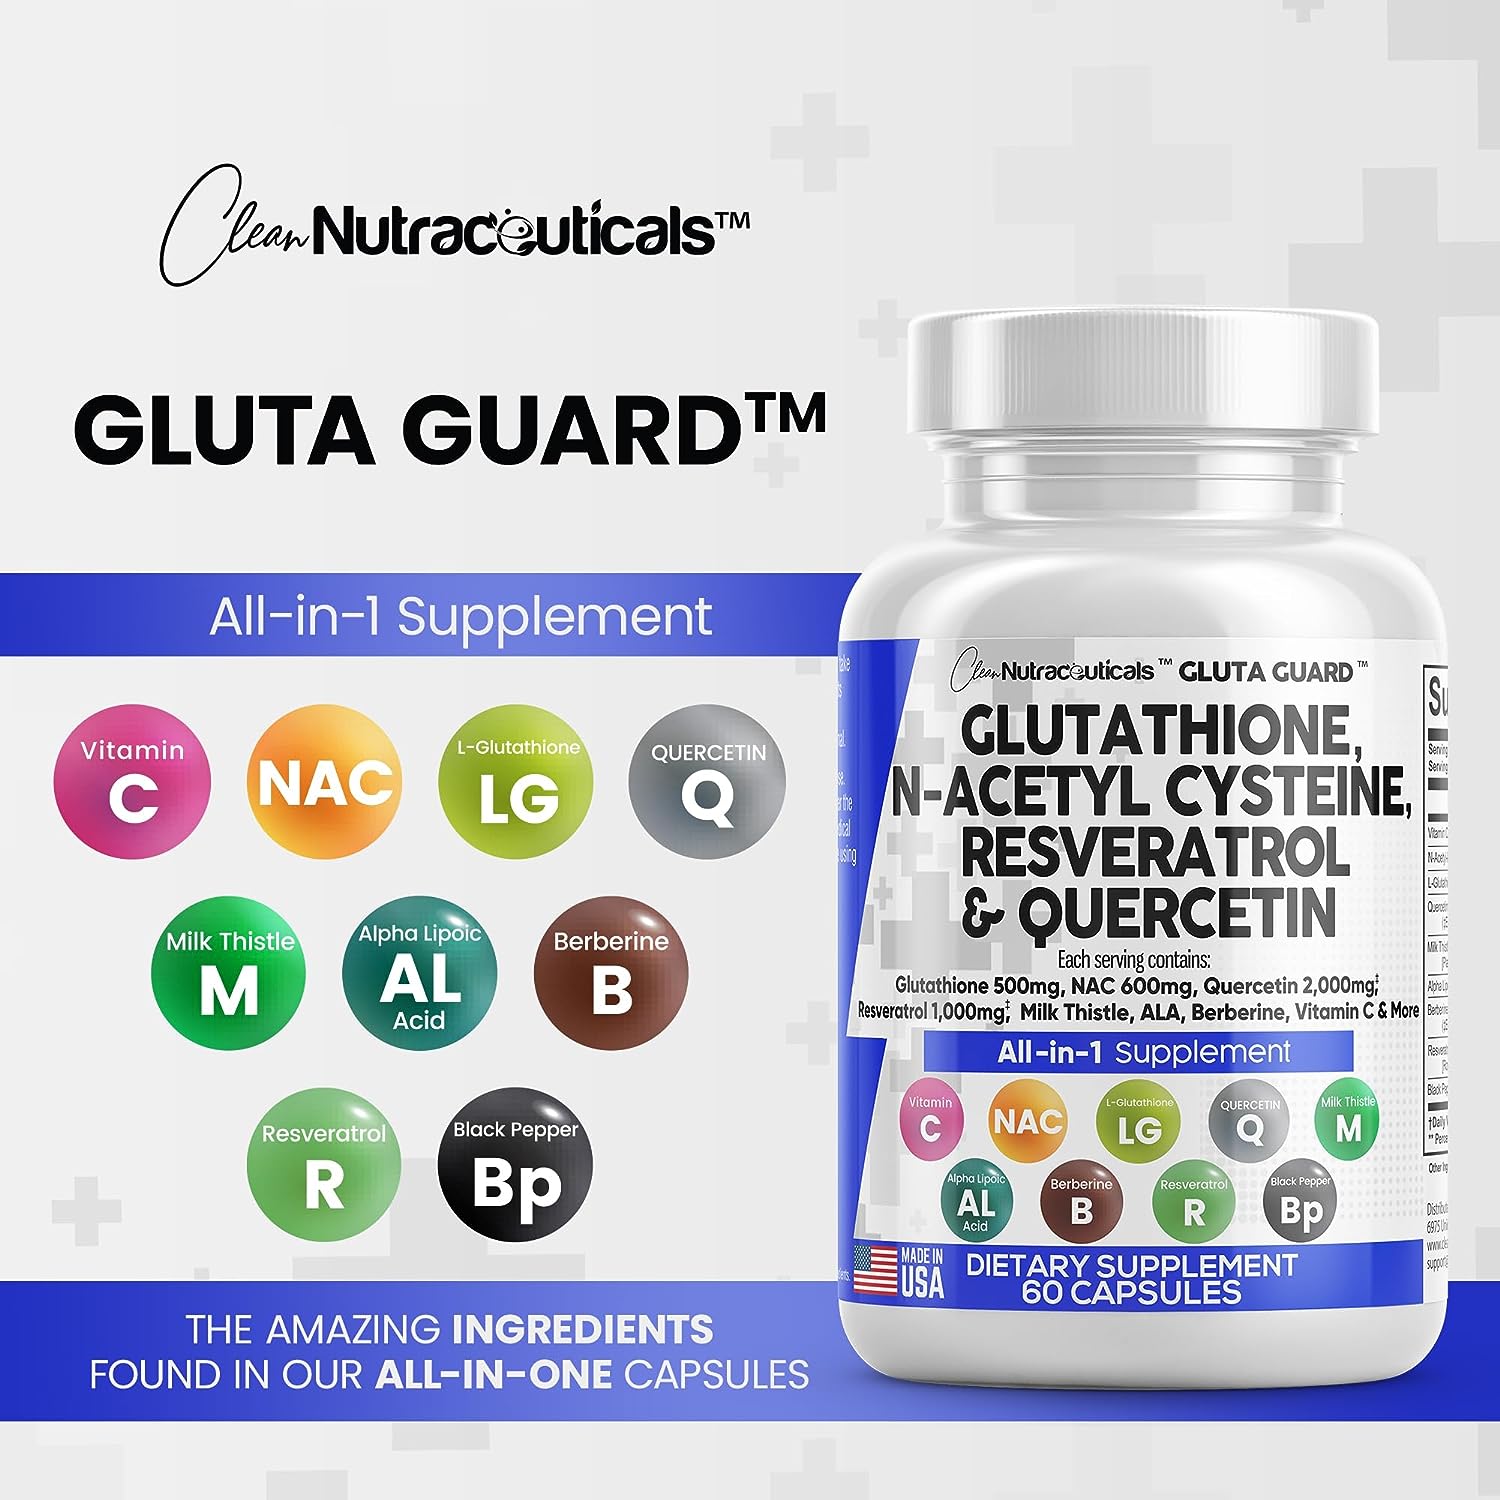 Gluta Guard™